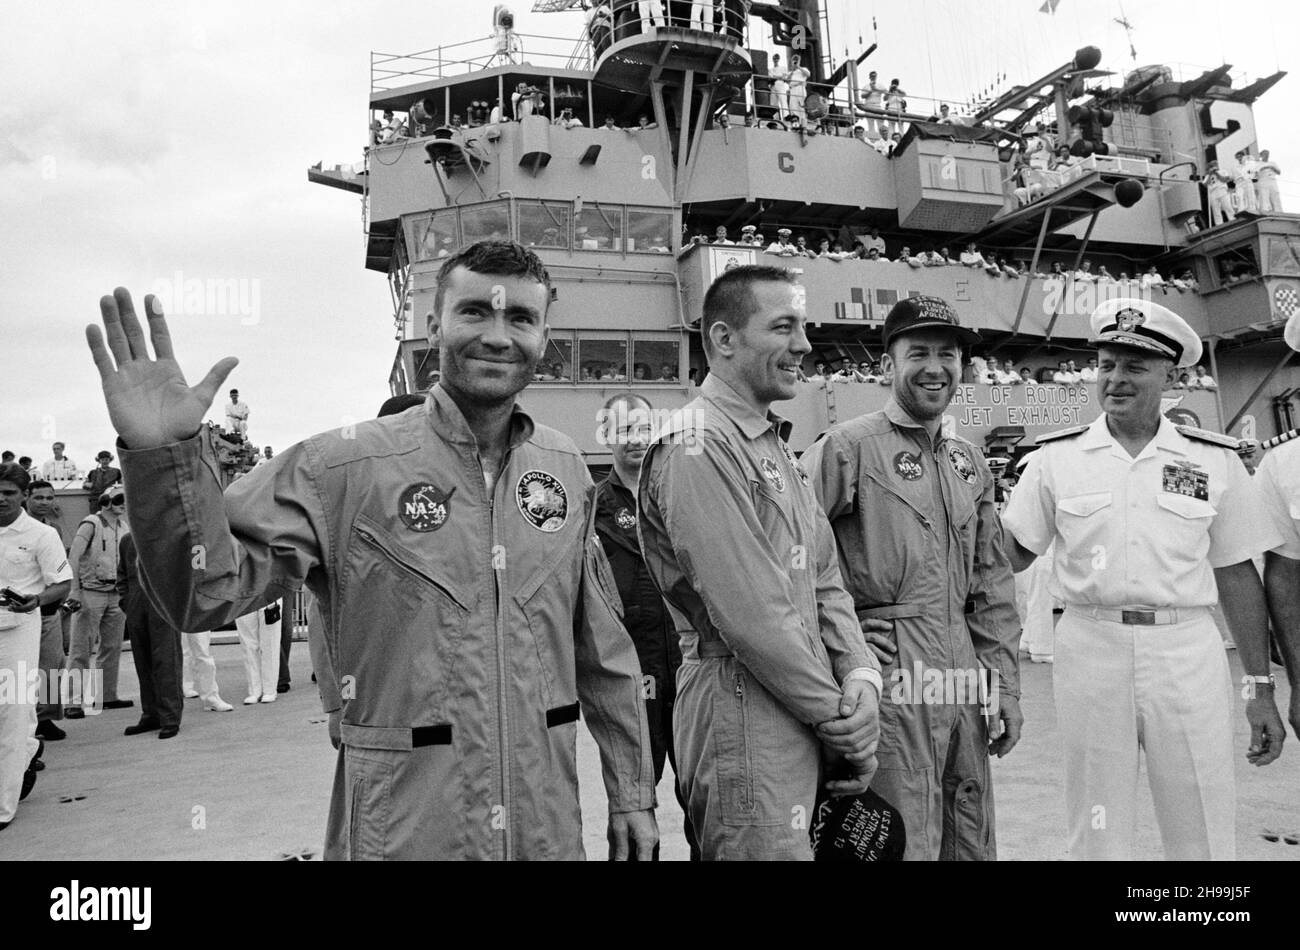 Der Konteradmiral Donald C. Davis, Kommandant der Task Force 130, der Pacific Recovery Forces für die bemannten Raumfahrzeuge Missionen, begrüßt die Apollo 13 Besatzungsmitglieder an Bord der USS Iwo Jima, dem primären Rückgewinnungsschiff für die Apollo 13 Mission. Die Besatzungsmitglieder (von links), die Astronauten Fred W. Haise Jr. (winkend), Mondmodulpilot; John L. Swigert Jr., Kommandozeilenpilot; und James A. Lovell Jr., Kommandant; wurden mit dem Hubschrauber zum Schiff transportiert, nachdem sie nur etwa vier Meilen von der USS Iwo Jima entfernt einen sanften Spritzguss hinuntergefahren hatten. Spritzwasserfall um 12:07:44 Uhr (CST), Stockfoto